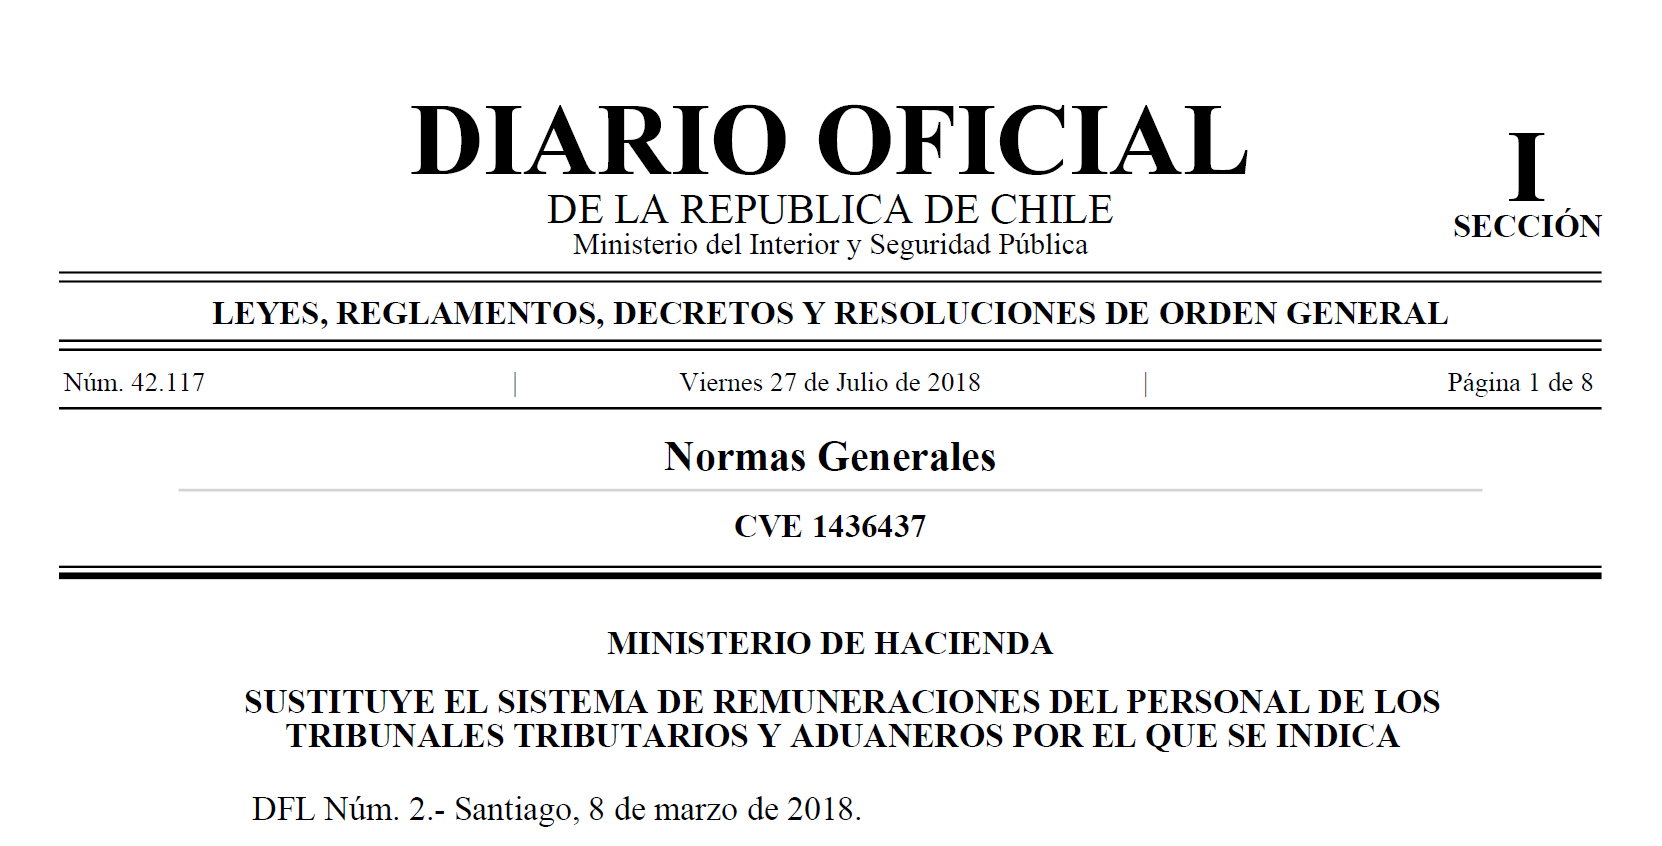 Diario Oficial publica DFL N° 2 que sustituye el sistema de remuneraciones del personal de los Tribunales Tributarios y Aduaneros